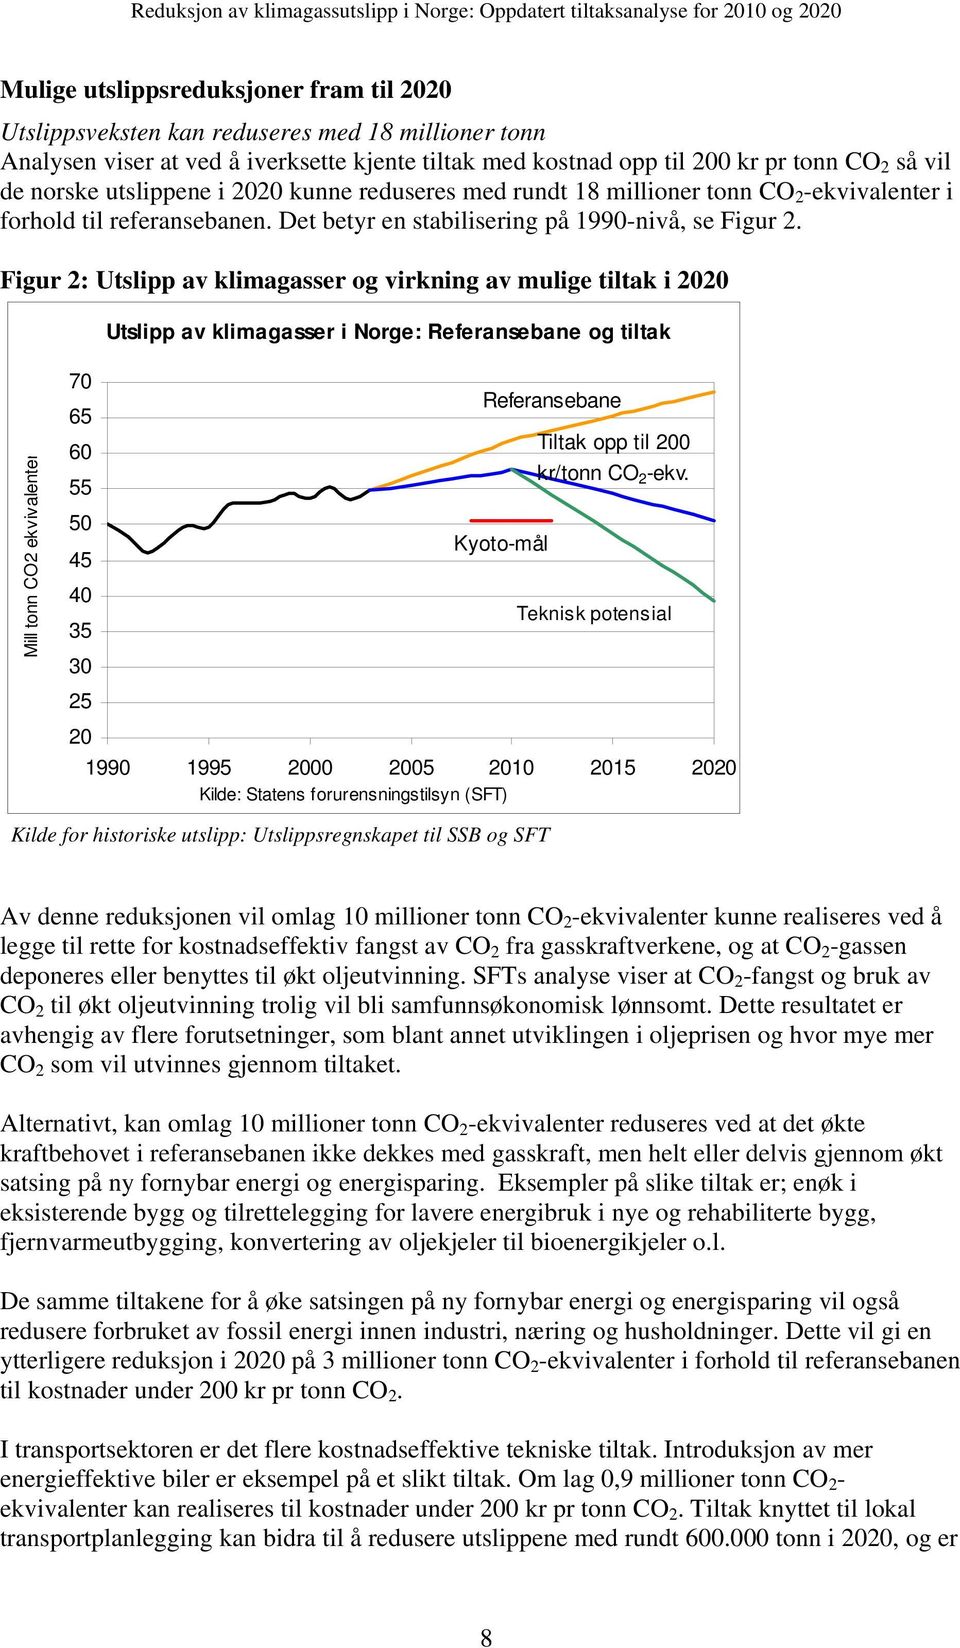 Figur 2: Utslipp av klimagasser og virkning av mulige tiltak i 2020 Utslipp av klimagasser i Norge: Referansebane og tiltak Mill tonn CO2 ekvivalenter 70 65 60 55 50 45 40 35 30 25 20 Referansebane